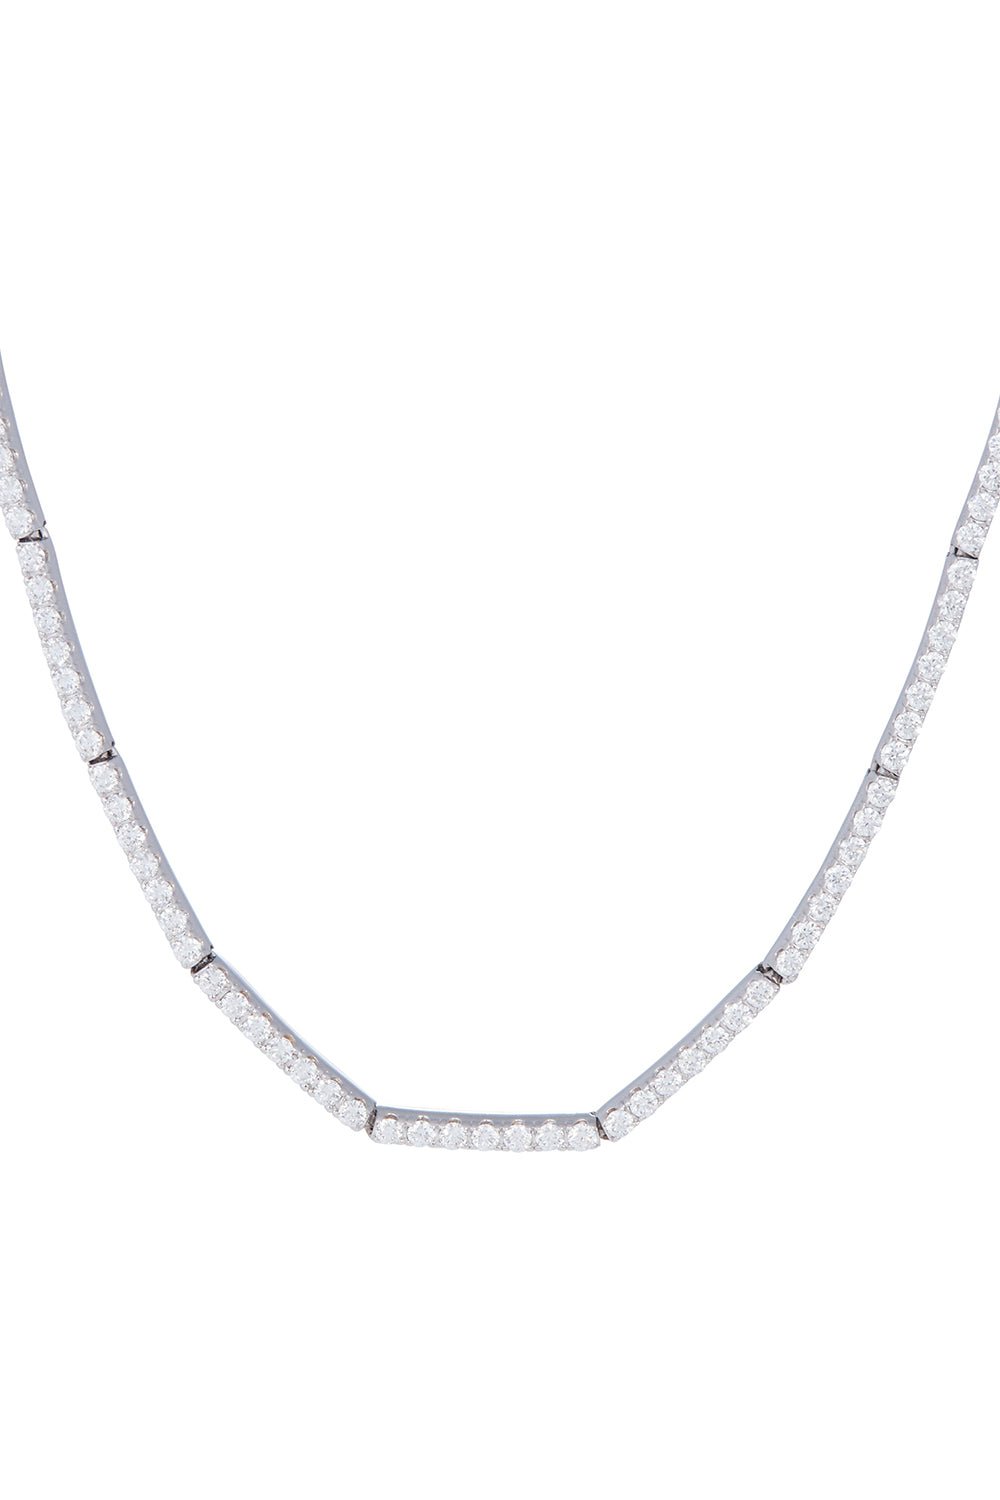 SIDNEY GARBER-Full Diamond Necklace - 15in - White Gold-WHITE GOLD